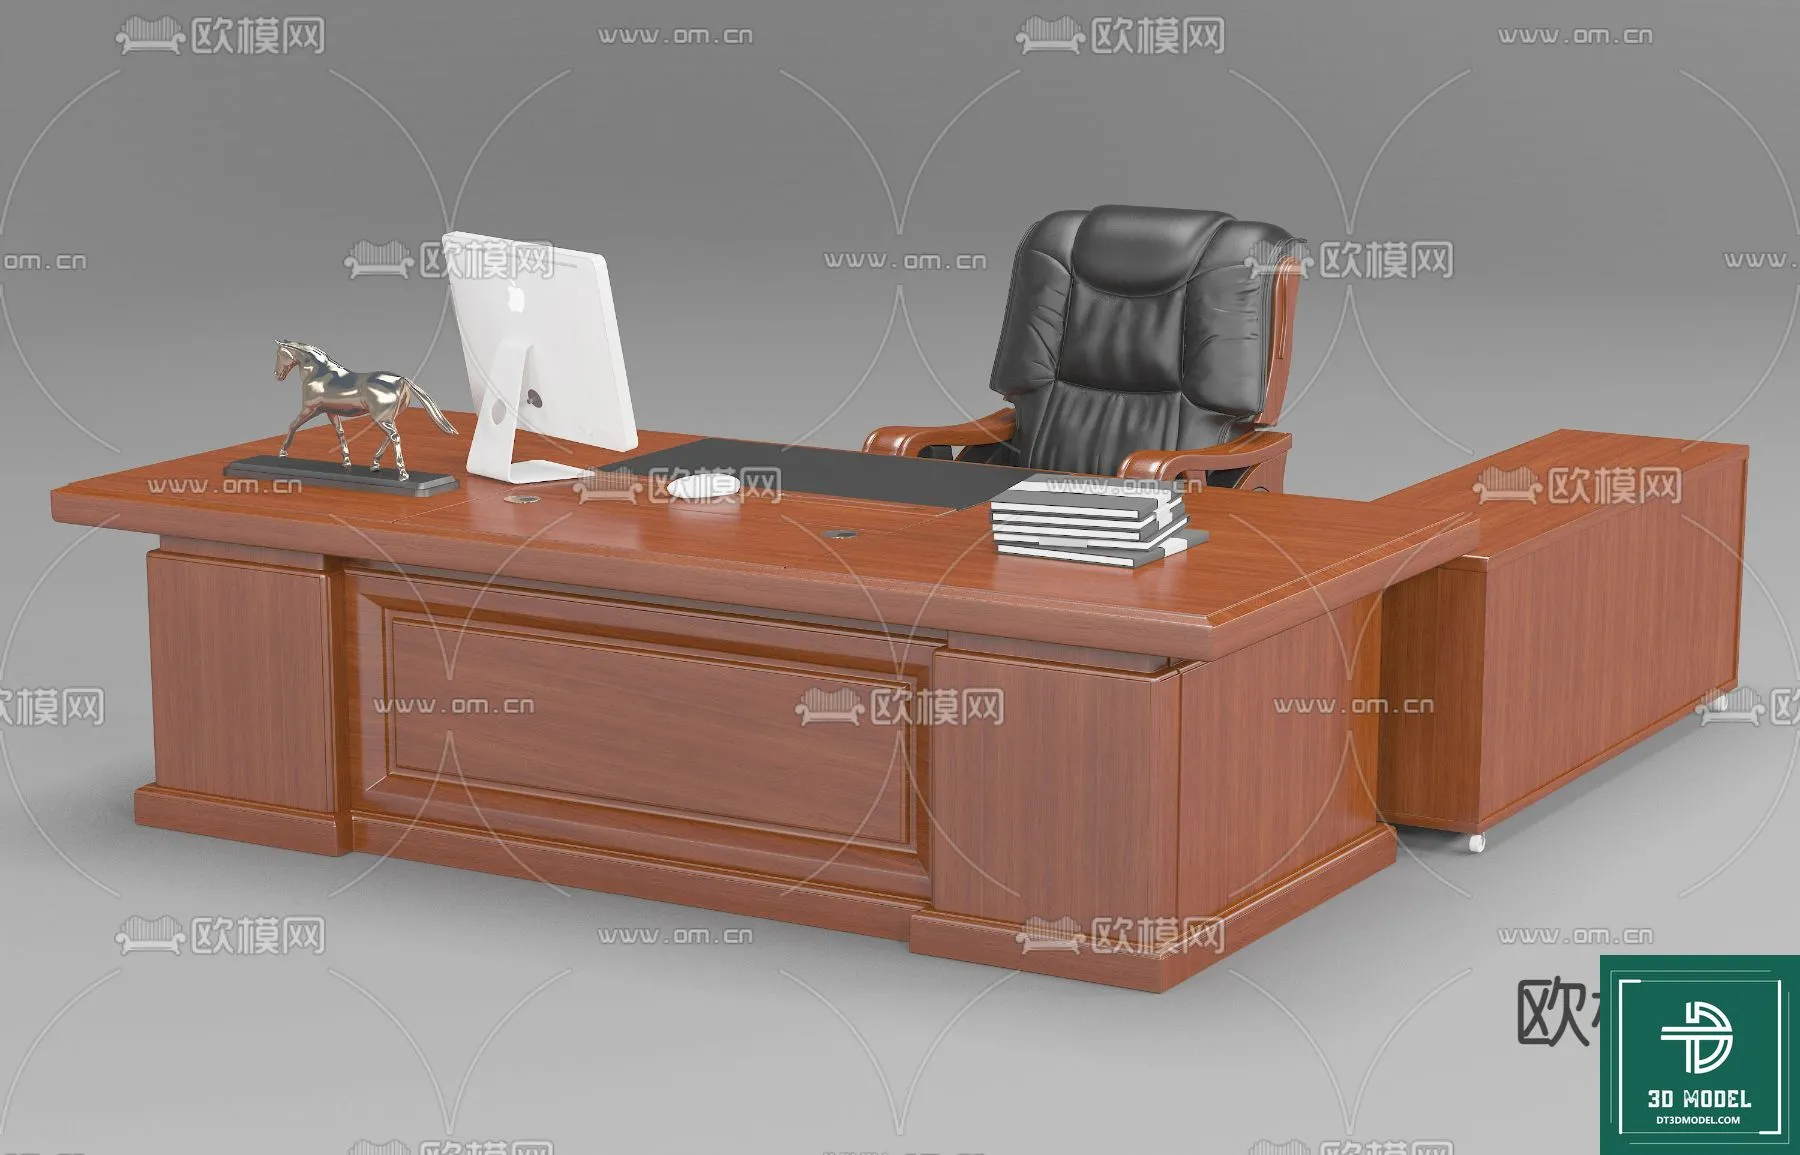 OFFICE TABLES – DESK 3DMODELS – 078